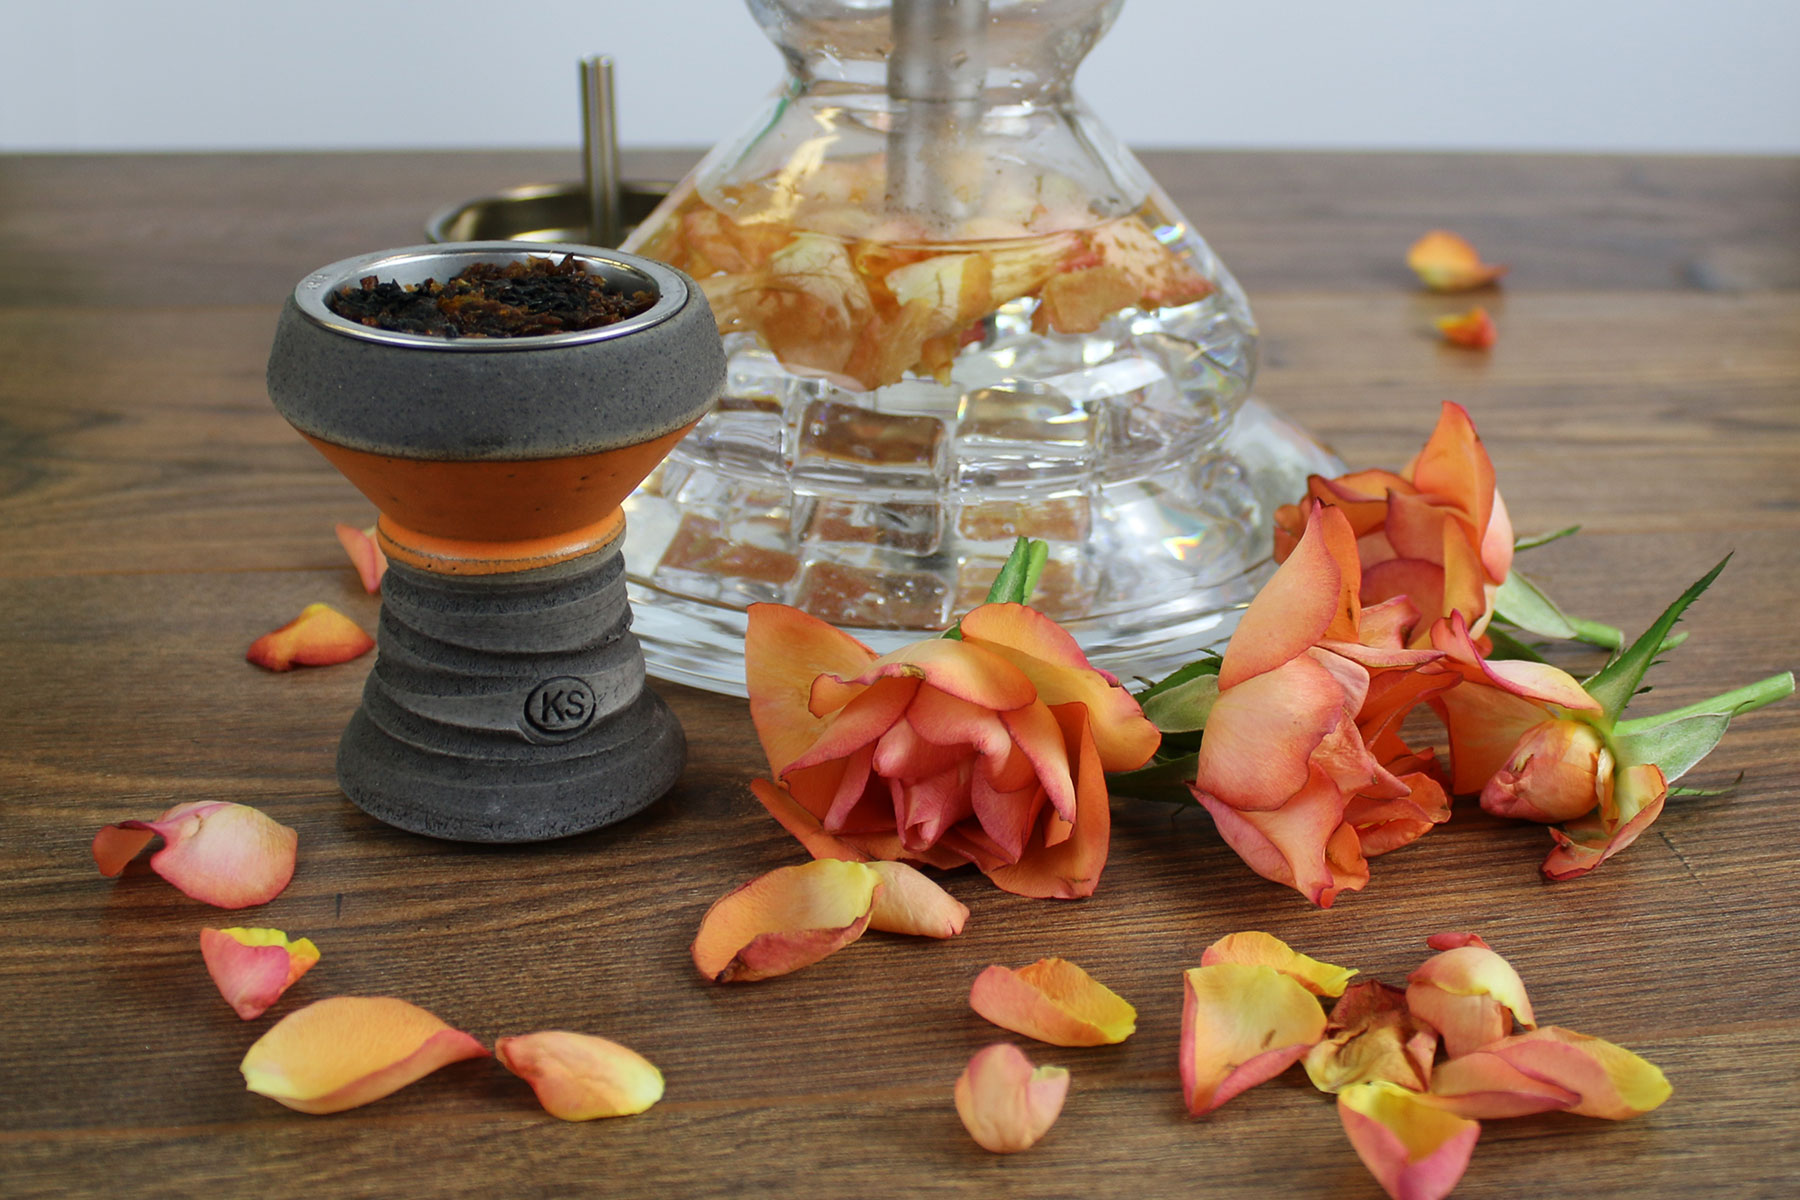 Zusammenstellung eines aufgerauchten Tabakkopfes und einem Shishaglas gefüllt mit Rosenblättern auf einem Holztisch umgeben von Rosenblüten. Die Blüten in der Bowl sehen welk und mitgenommen aus.